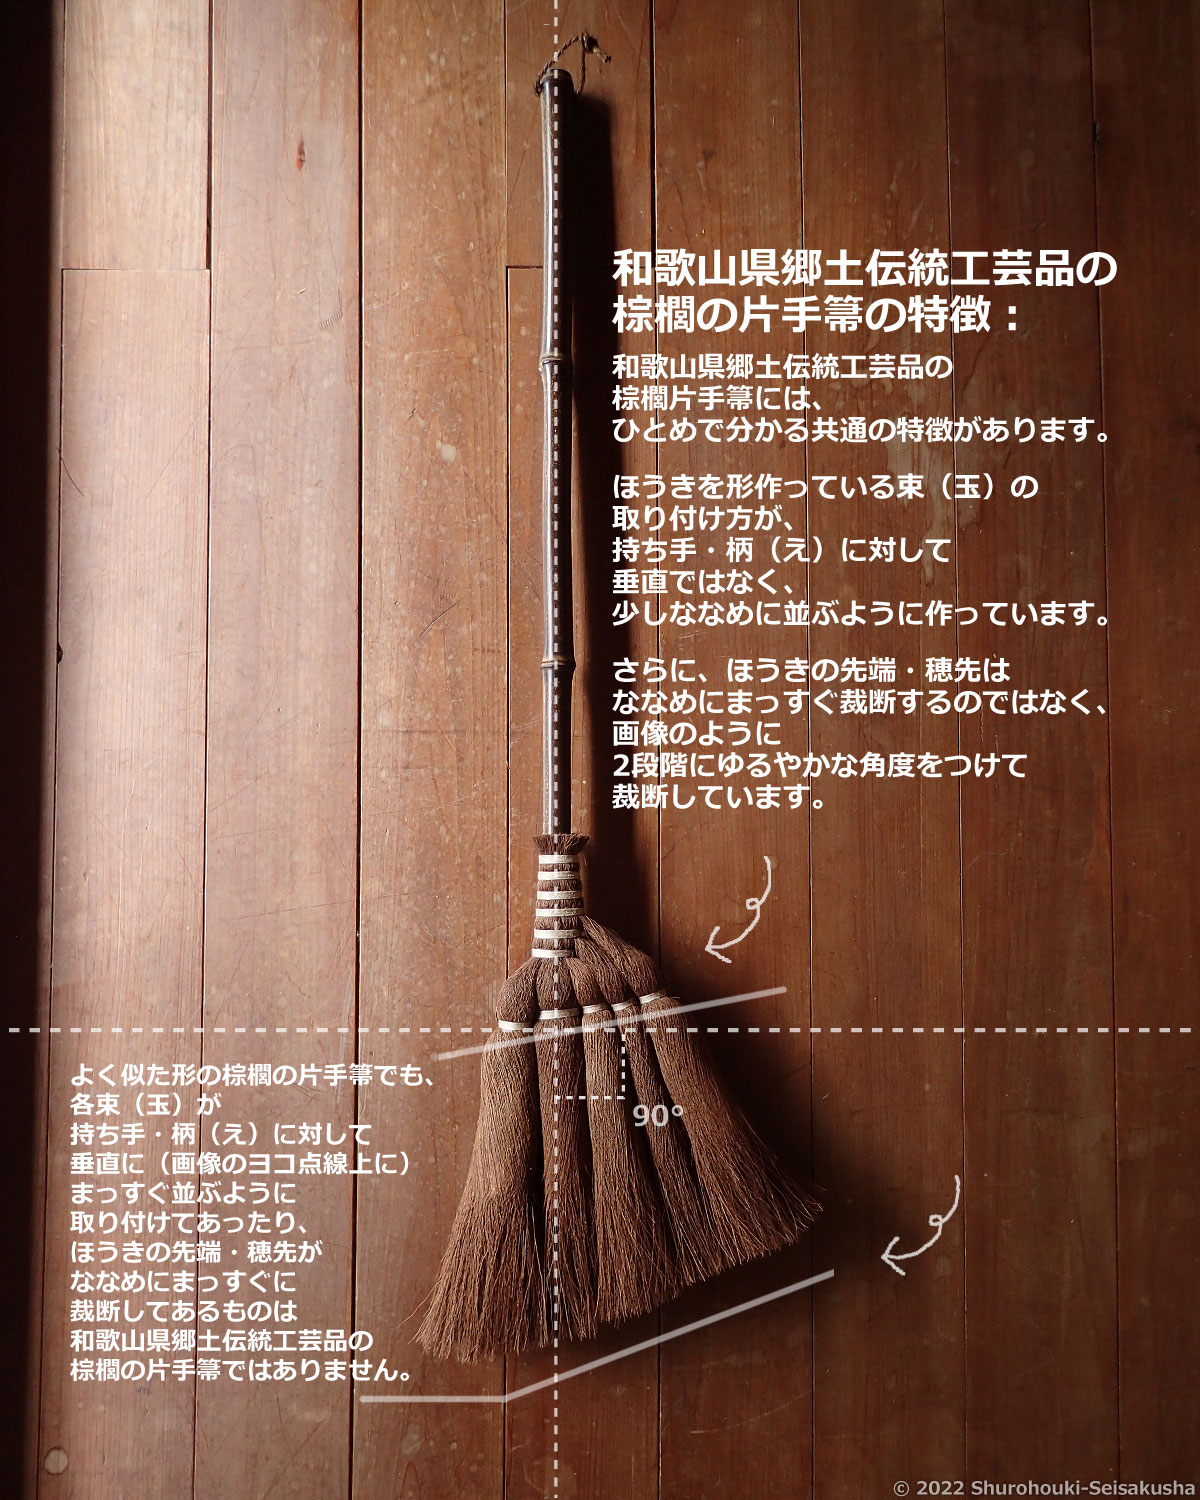 和歌山県郷土伝統工芸品の棕櫚の片手箒の特徴について